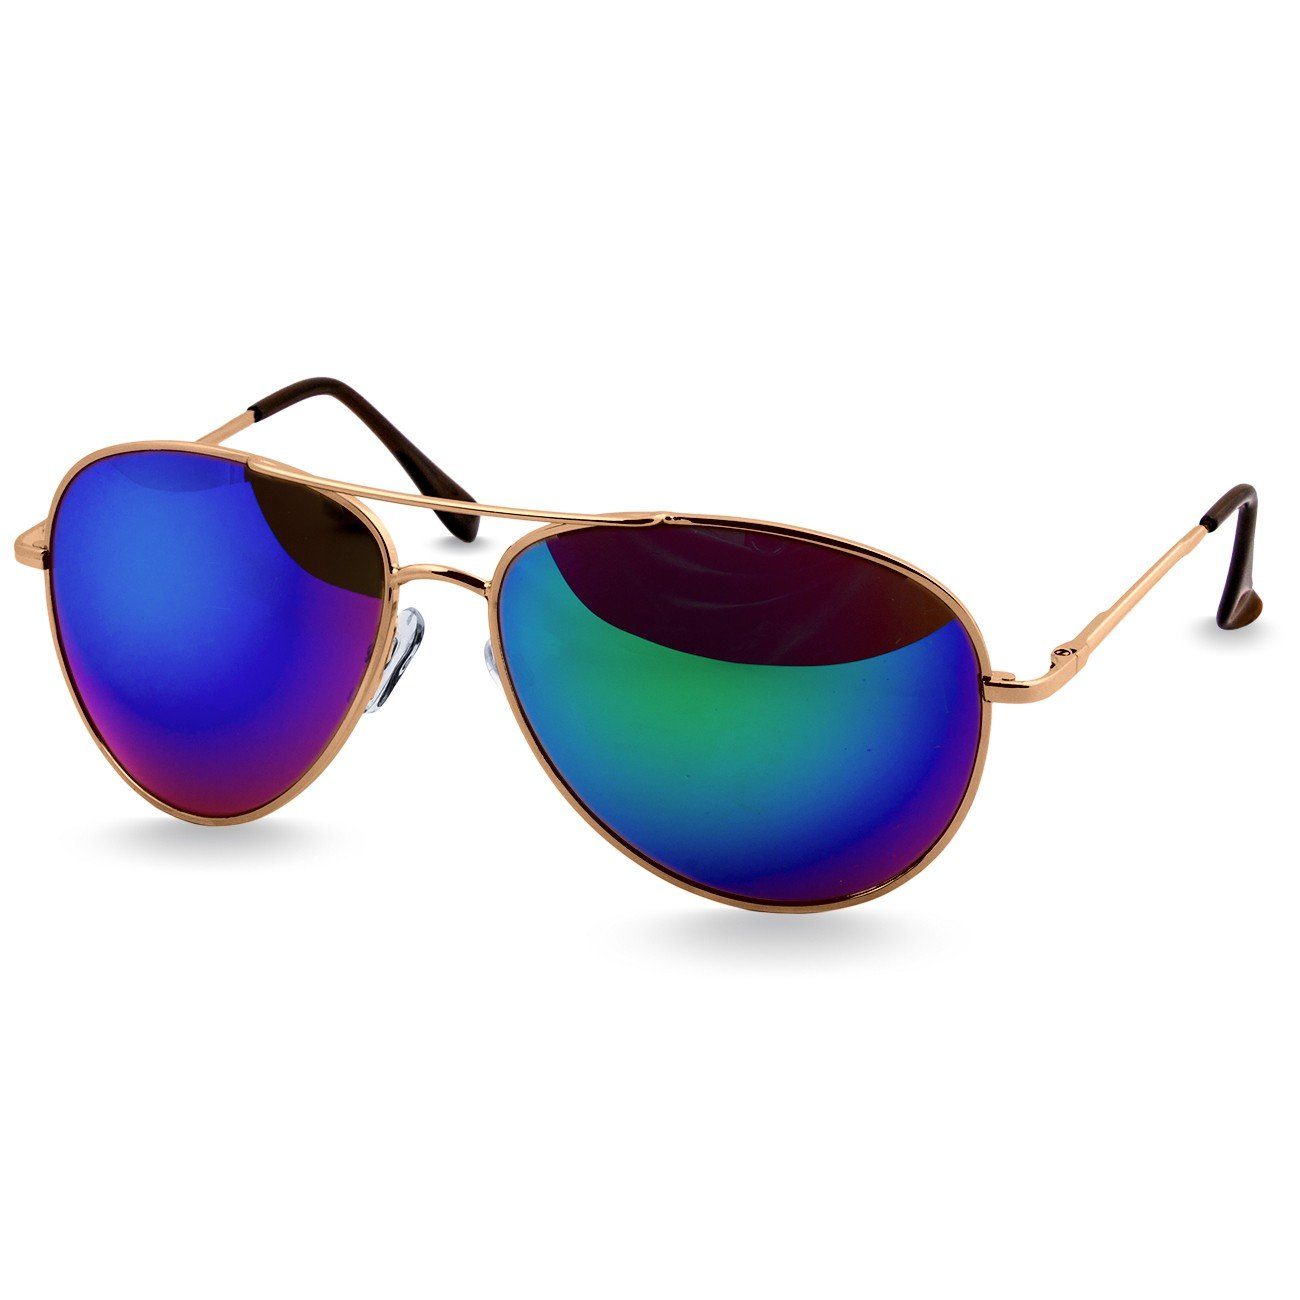 Caspar verspiegelt / Retro klassische Unisex Sonnenbrille SG013 Pilotenbrille lila gold